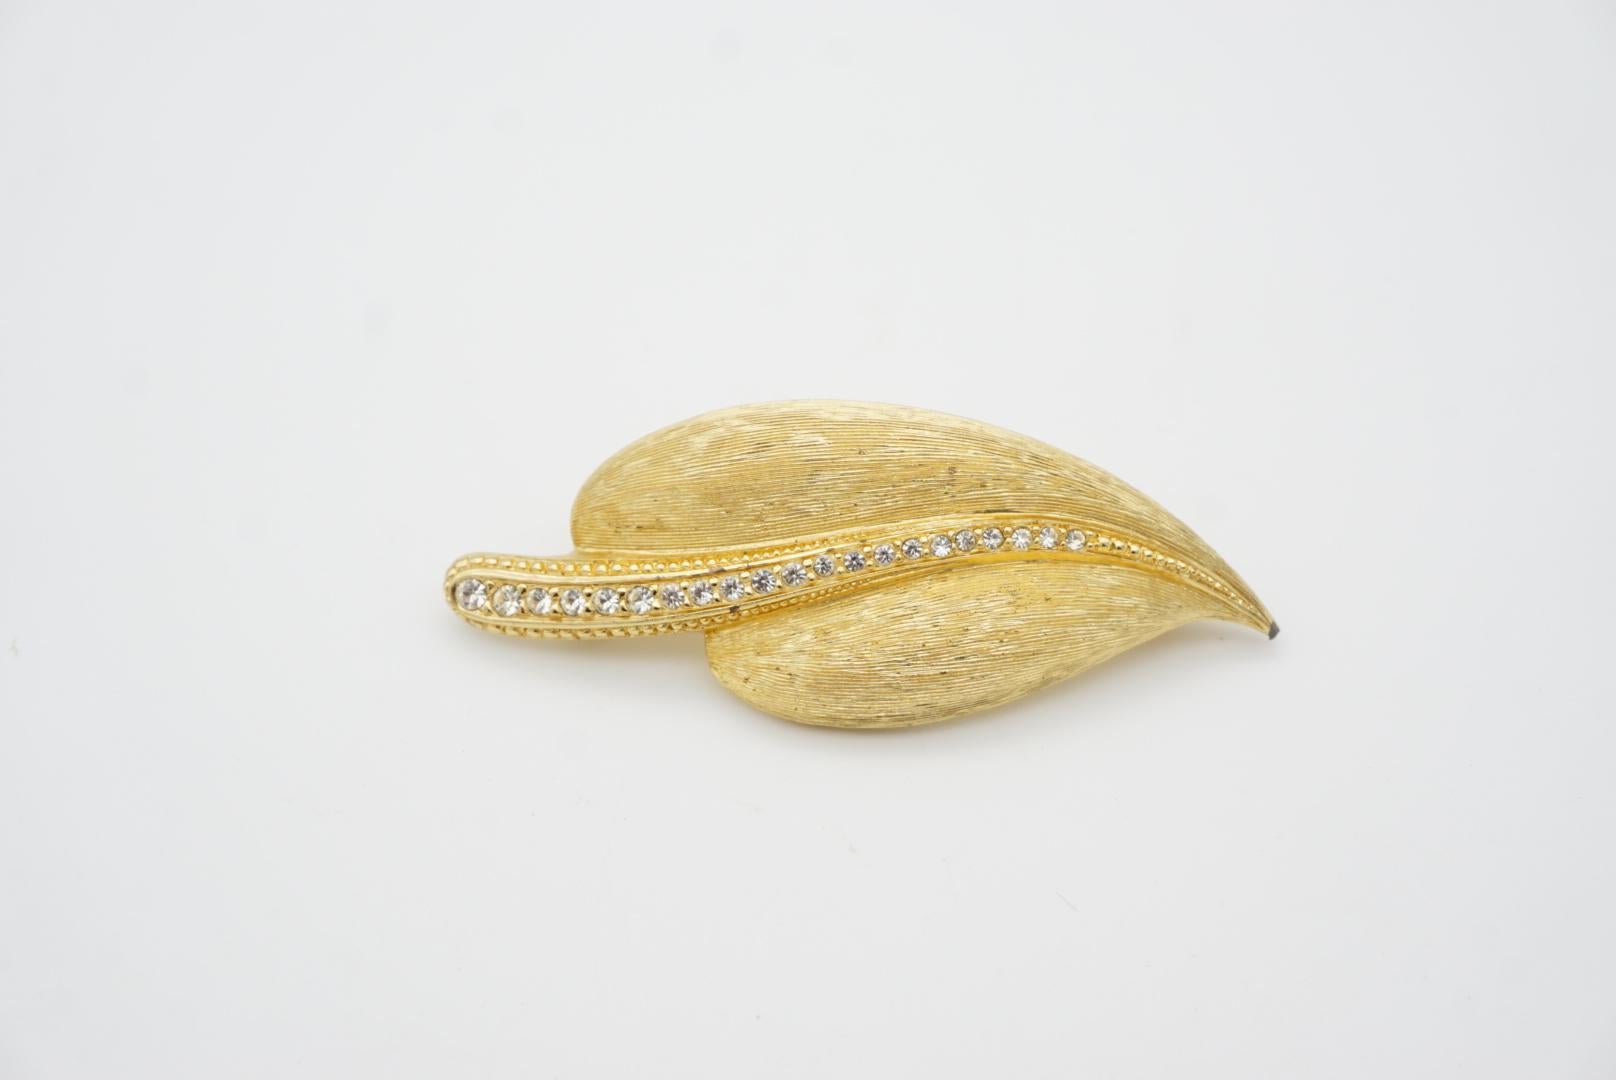 Christian Dior 1980s Vintage Large Wavy Swarovski Crystals Gold Palm Leaf Brooch For Sale 2